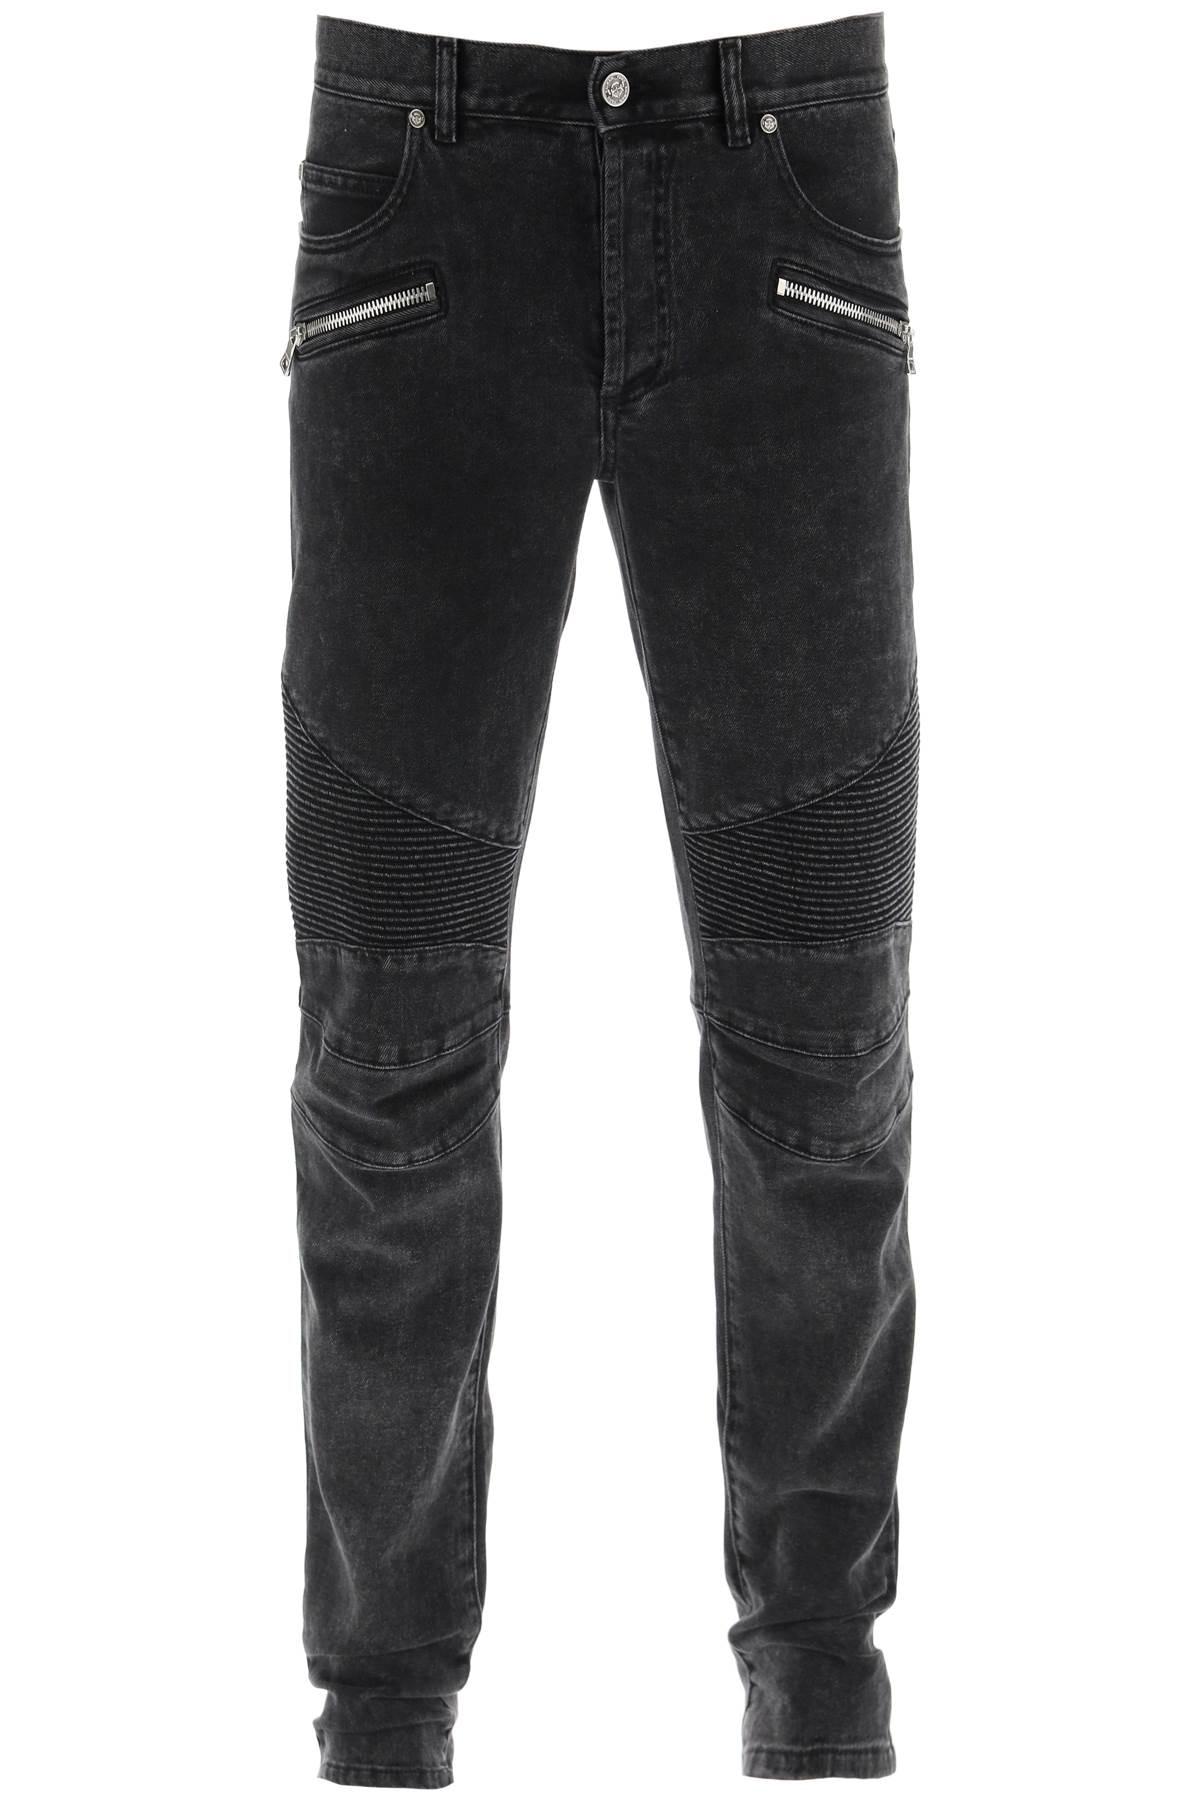 Balmain Tapered Biker Jeans in Black for Men | Lyst